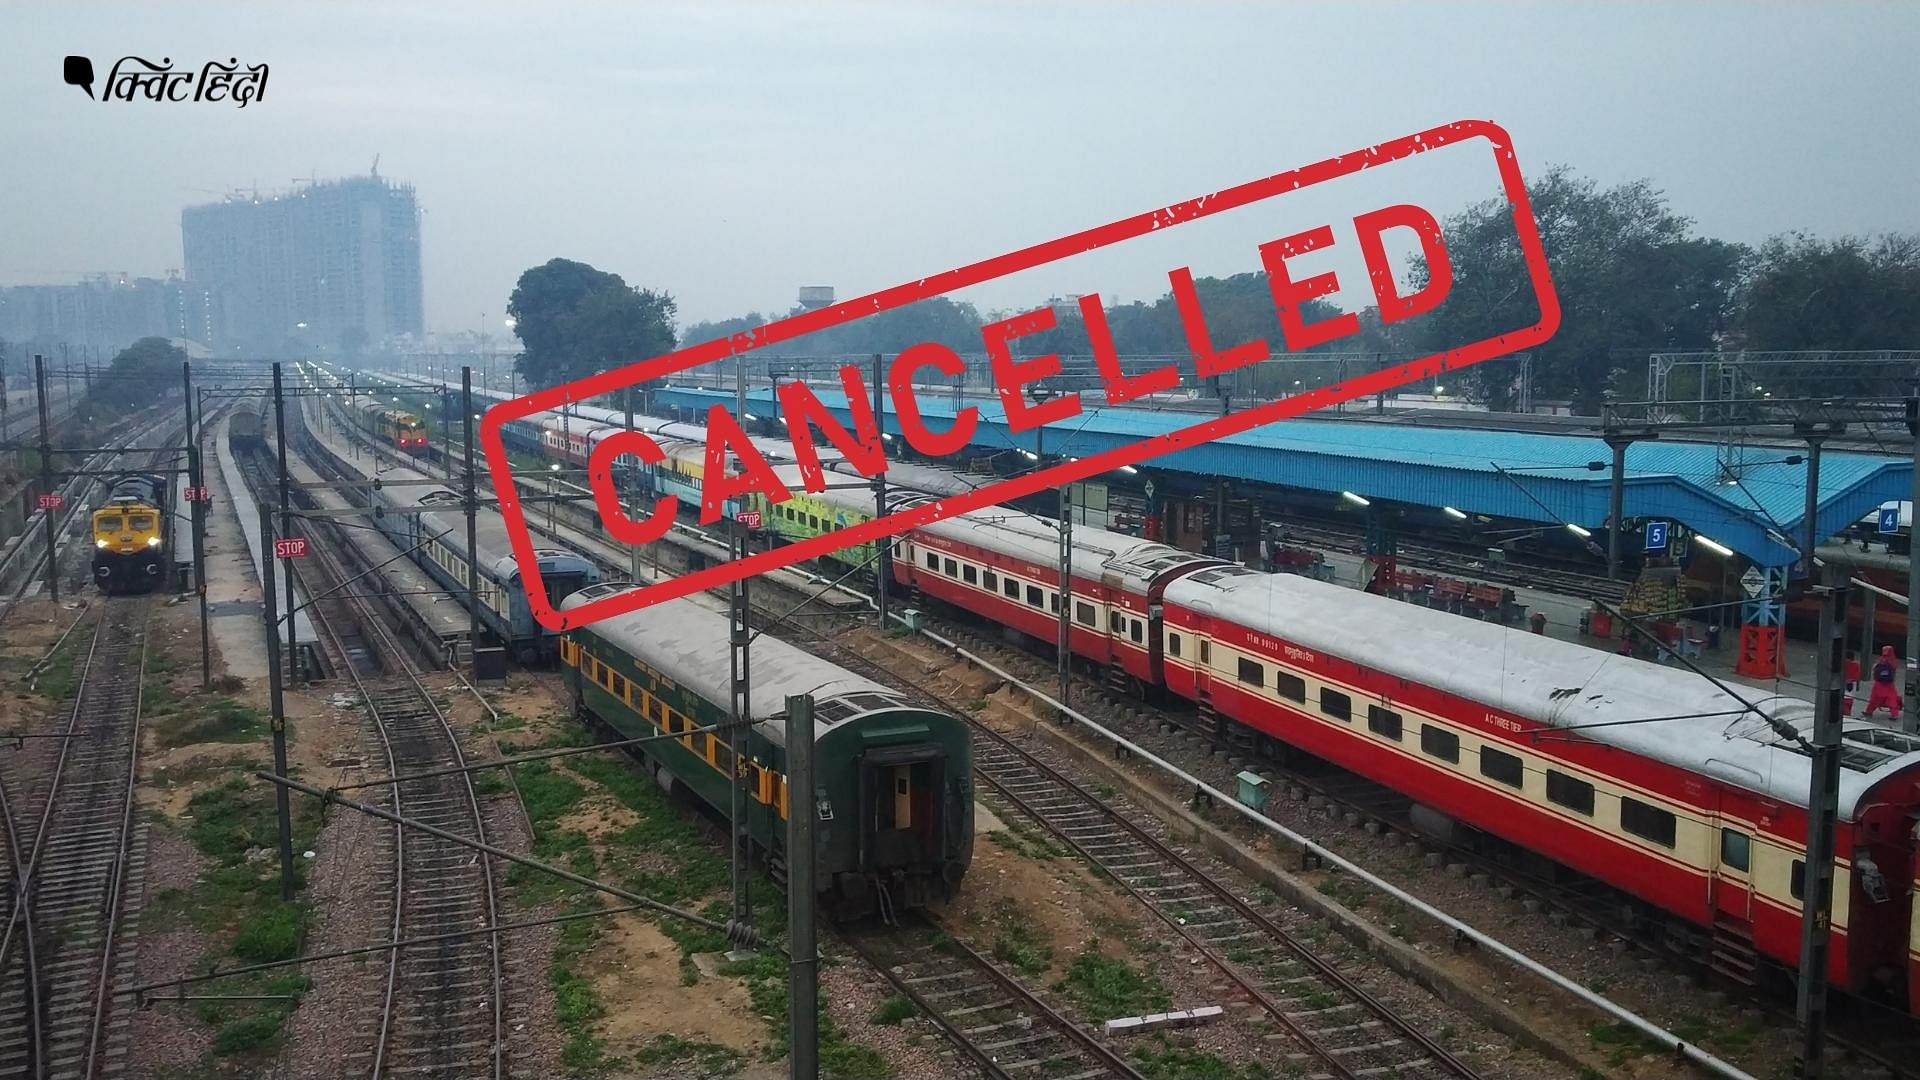 <div class="paragraphs"><p>Indian Railways Cancelled Trains List</p></div>